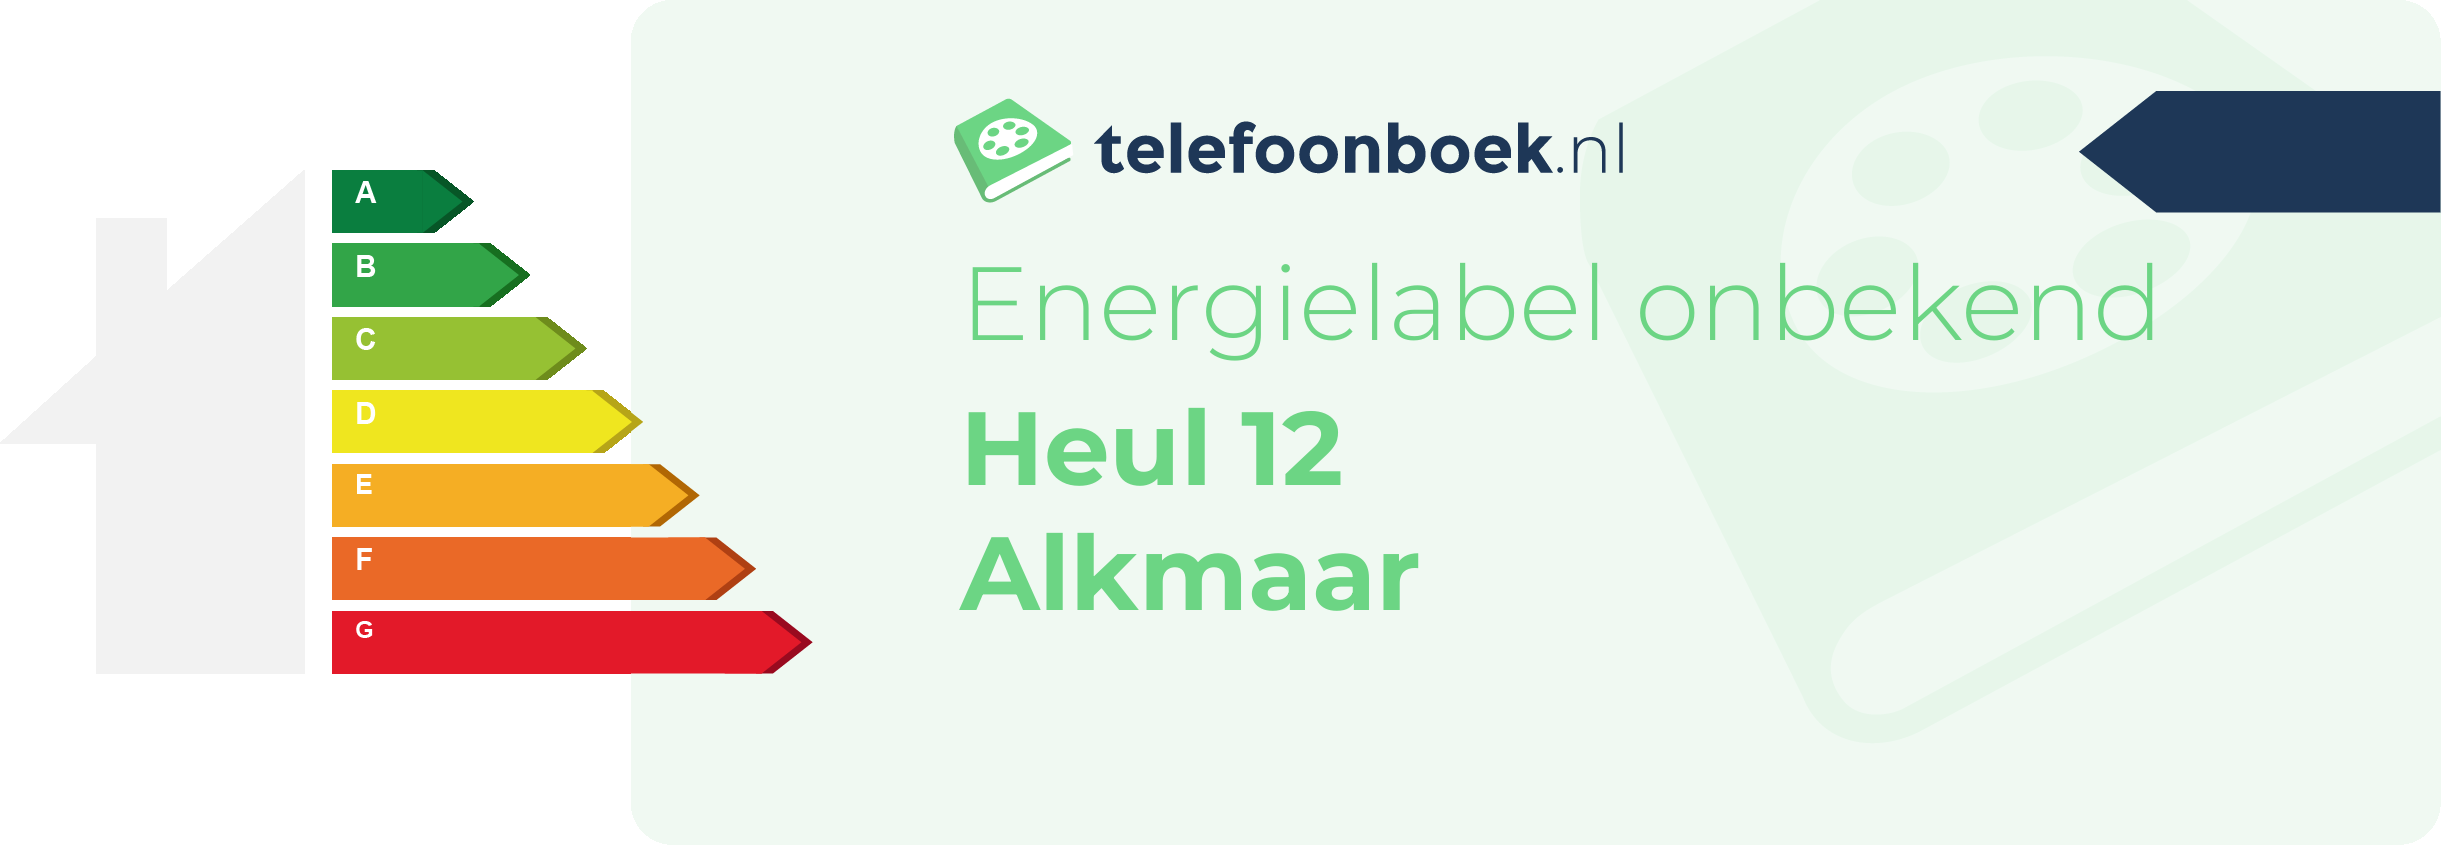 Energielabel Heul 12 Alkmaar